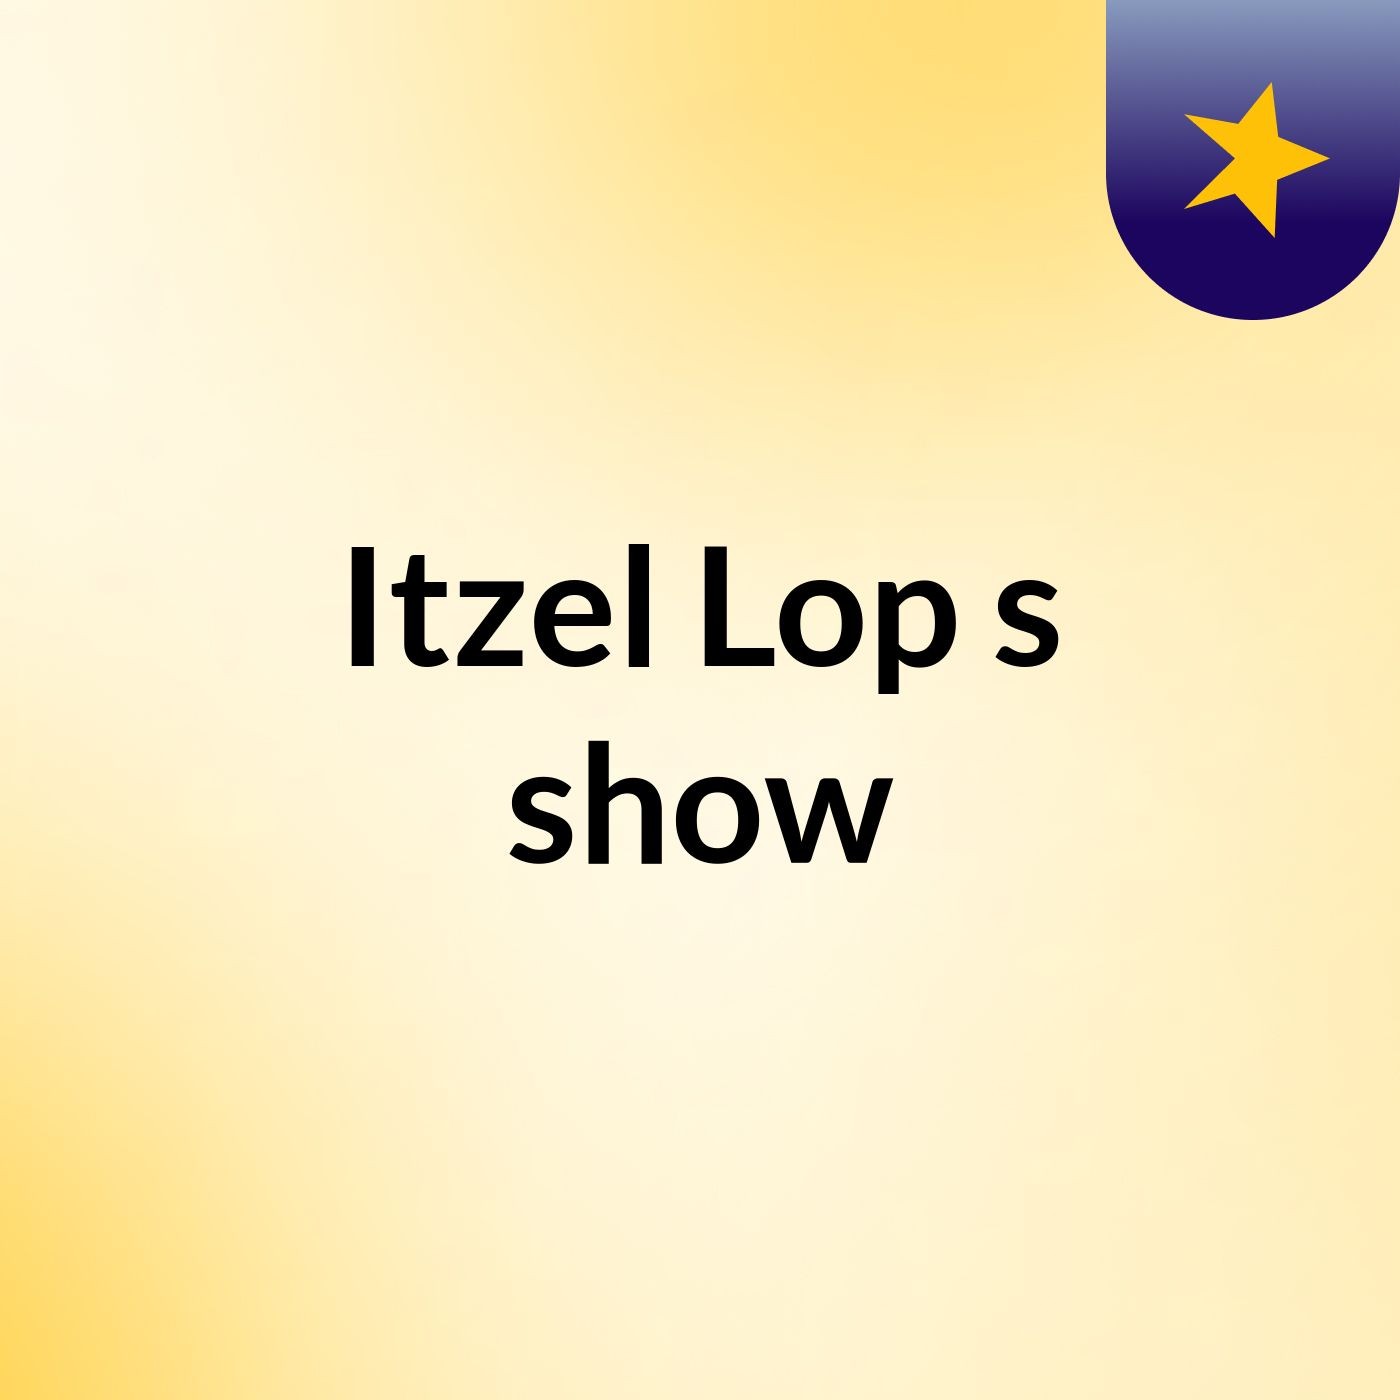 Itzel Lop's show